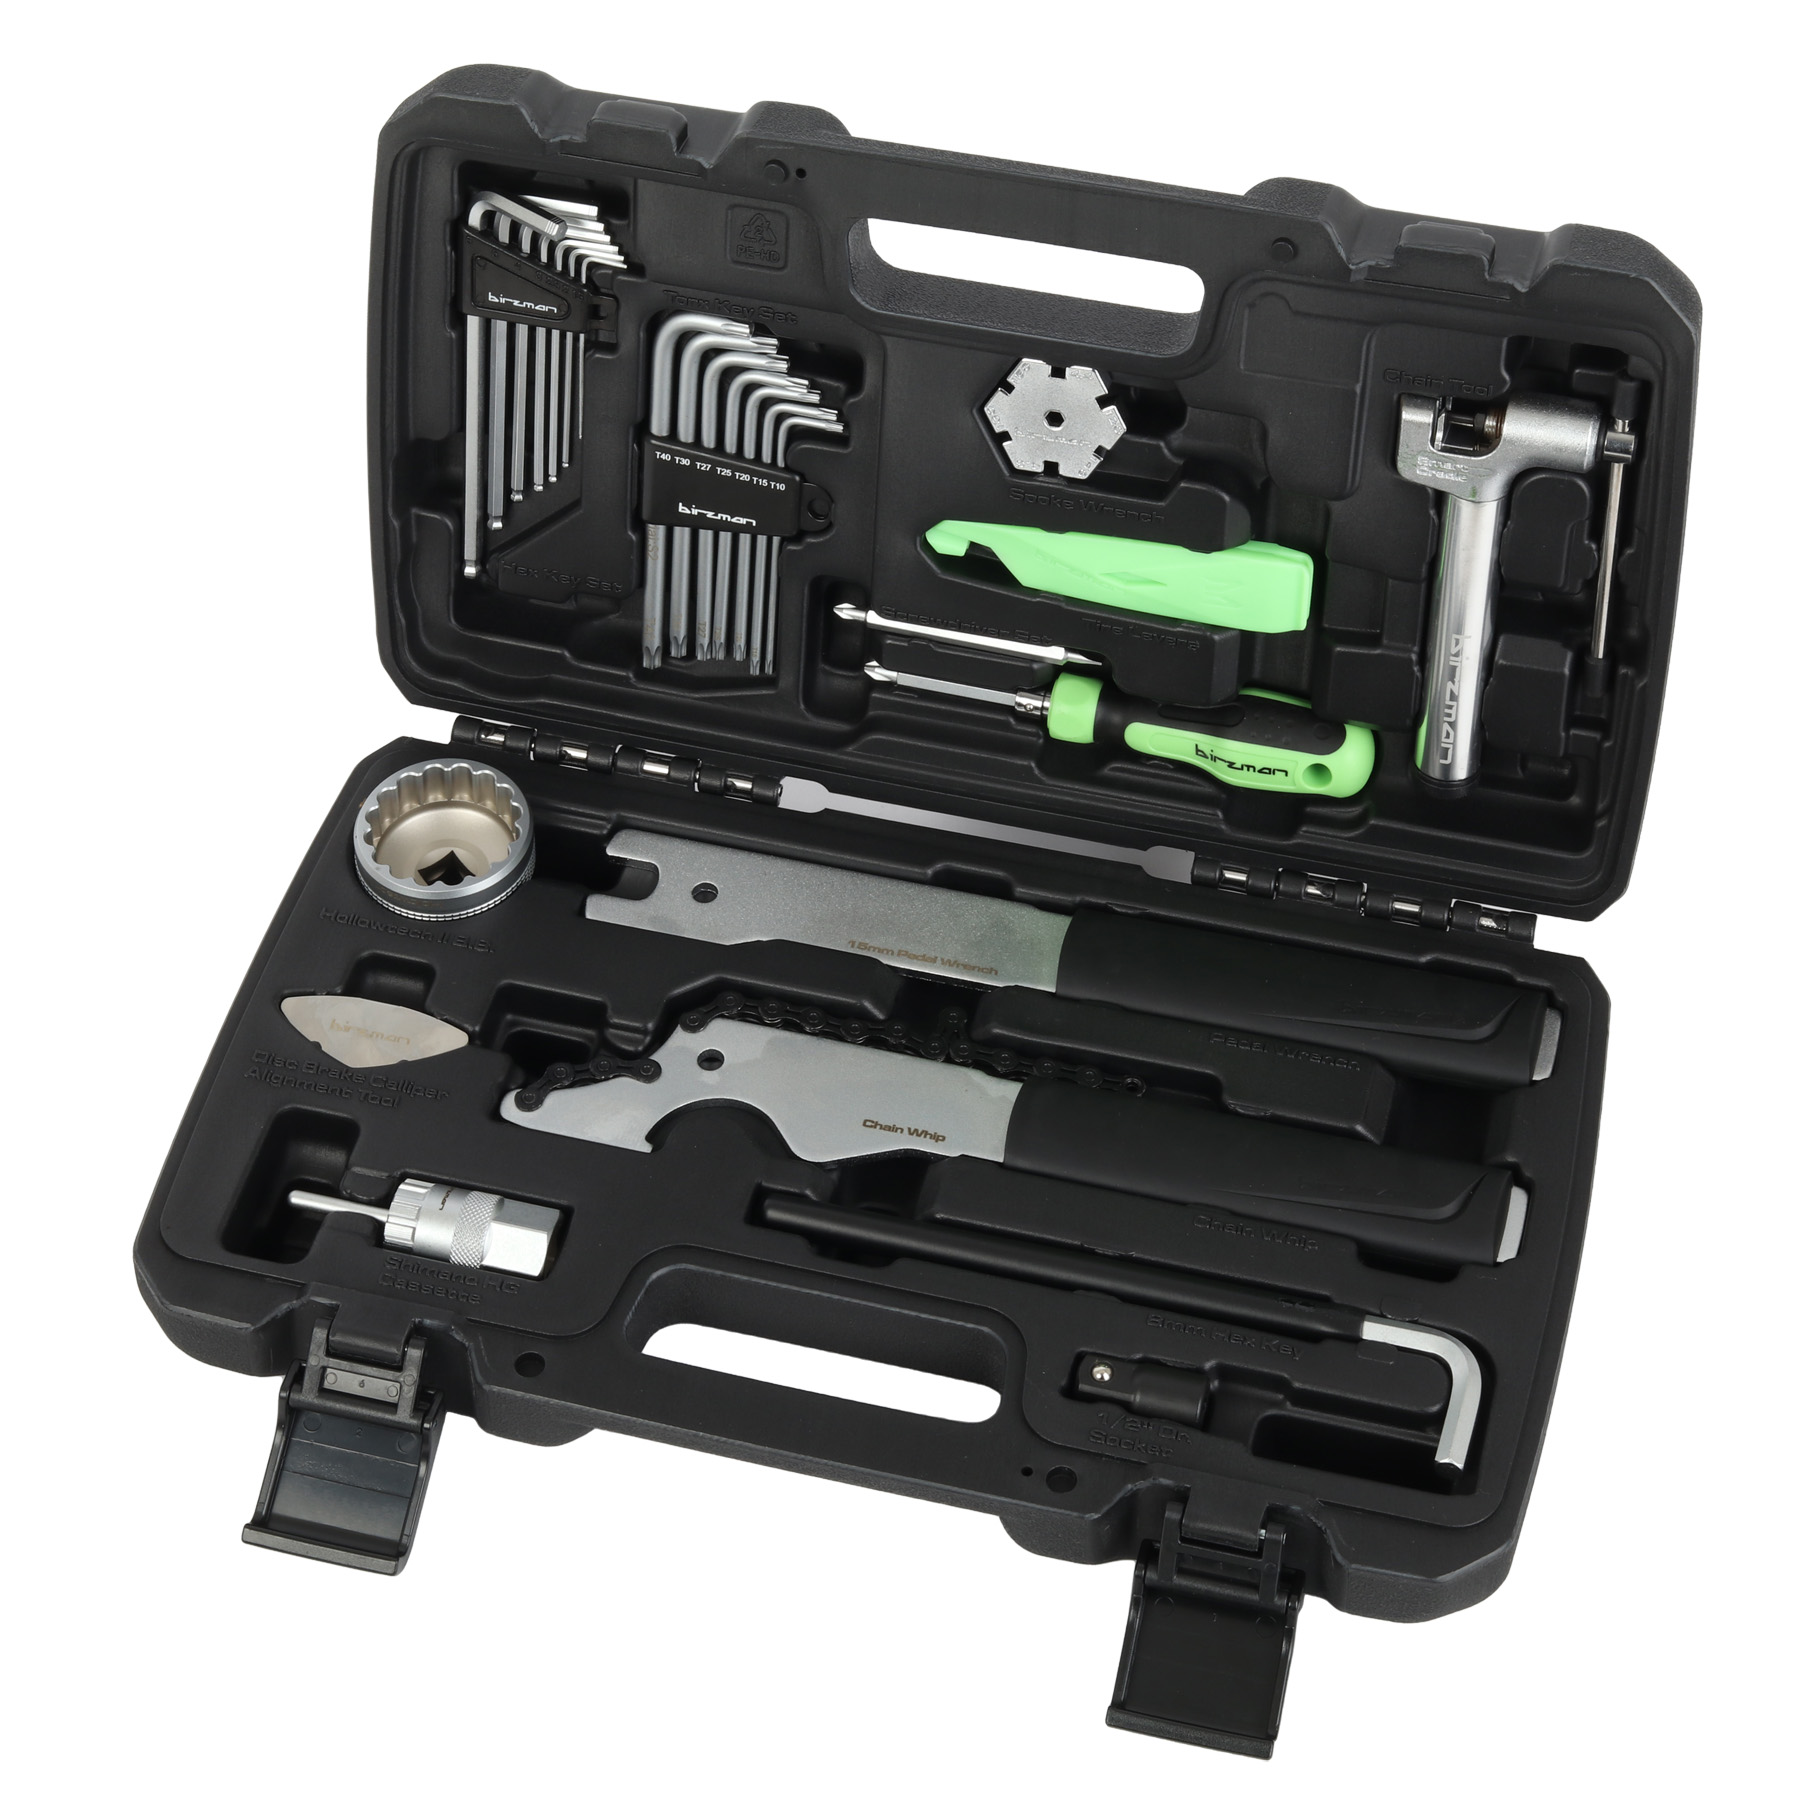 Produktbild von Birzman Essential Tool Box Werkzeugkoffer